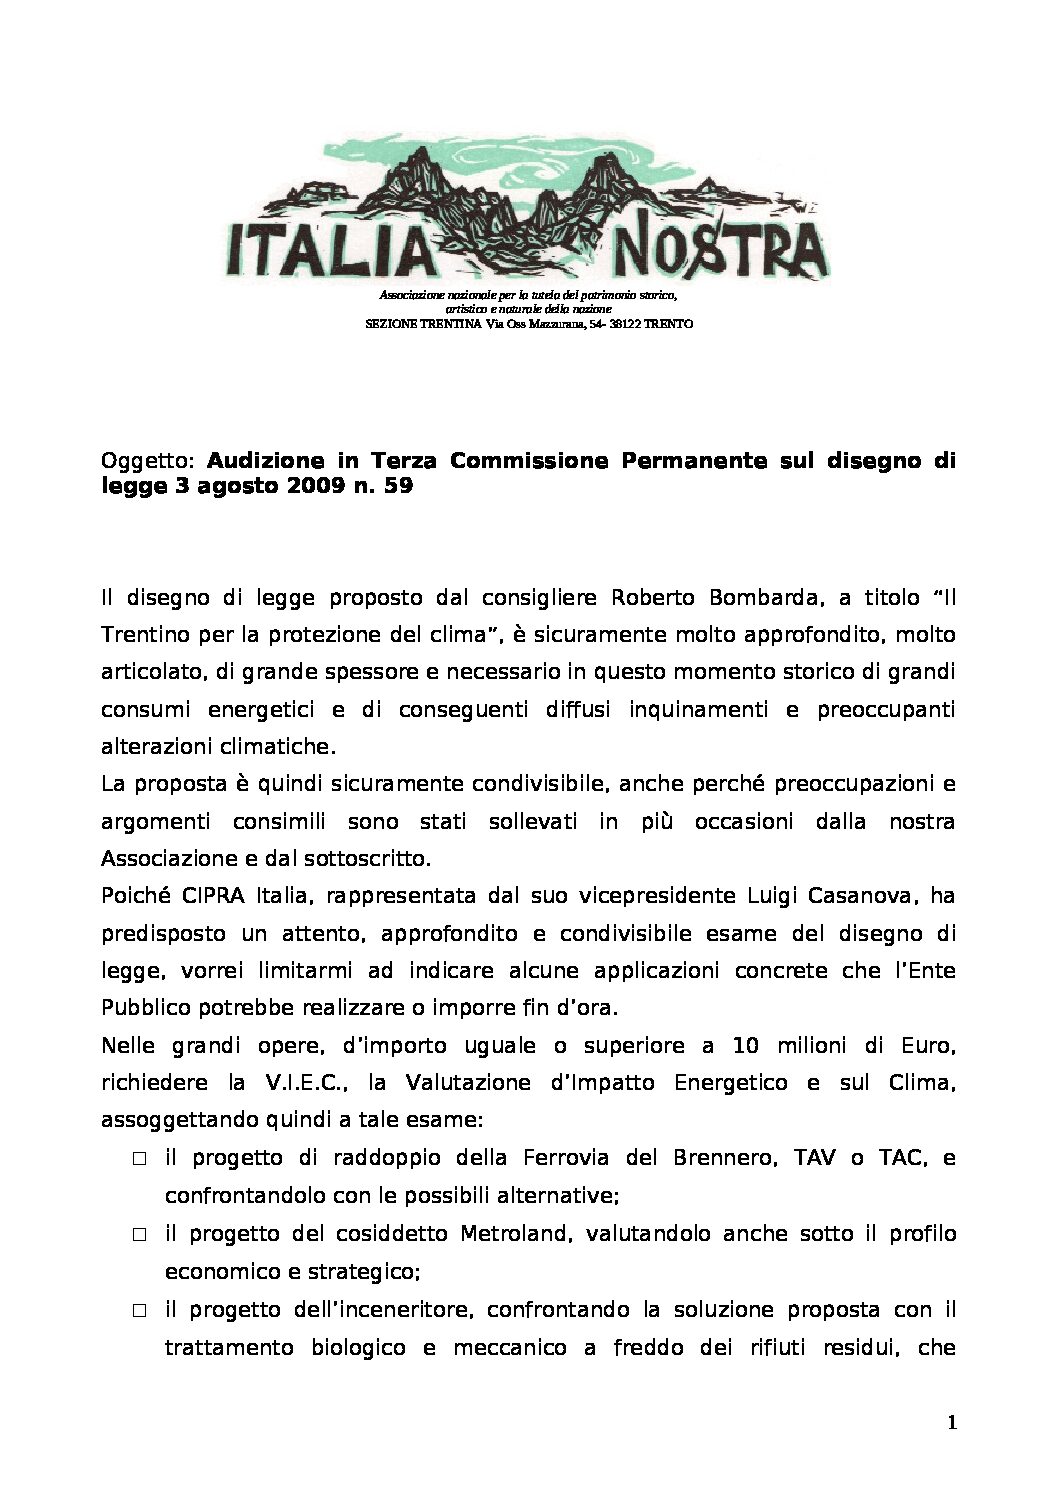 “Il Trentino per la protezione del clima”, disegno di legge 3 agosto 2009 n. 59 – Osservazioni